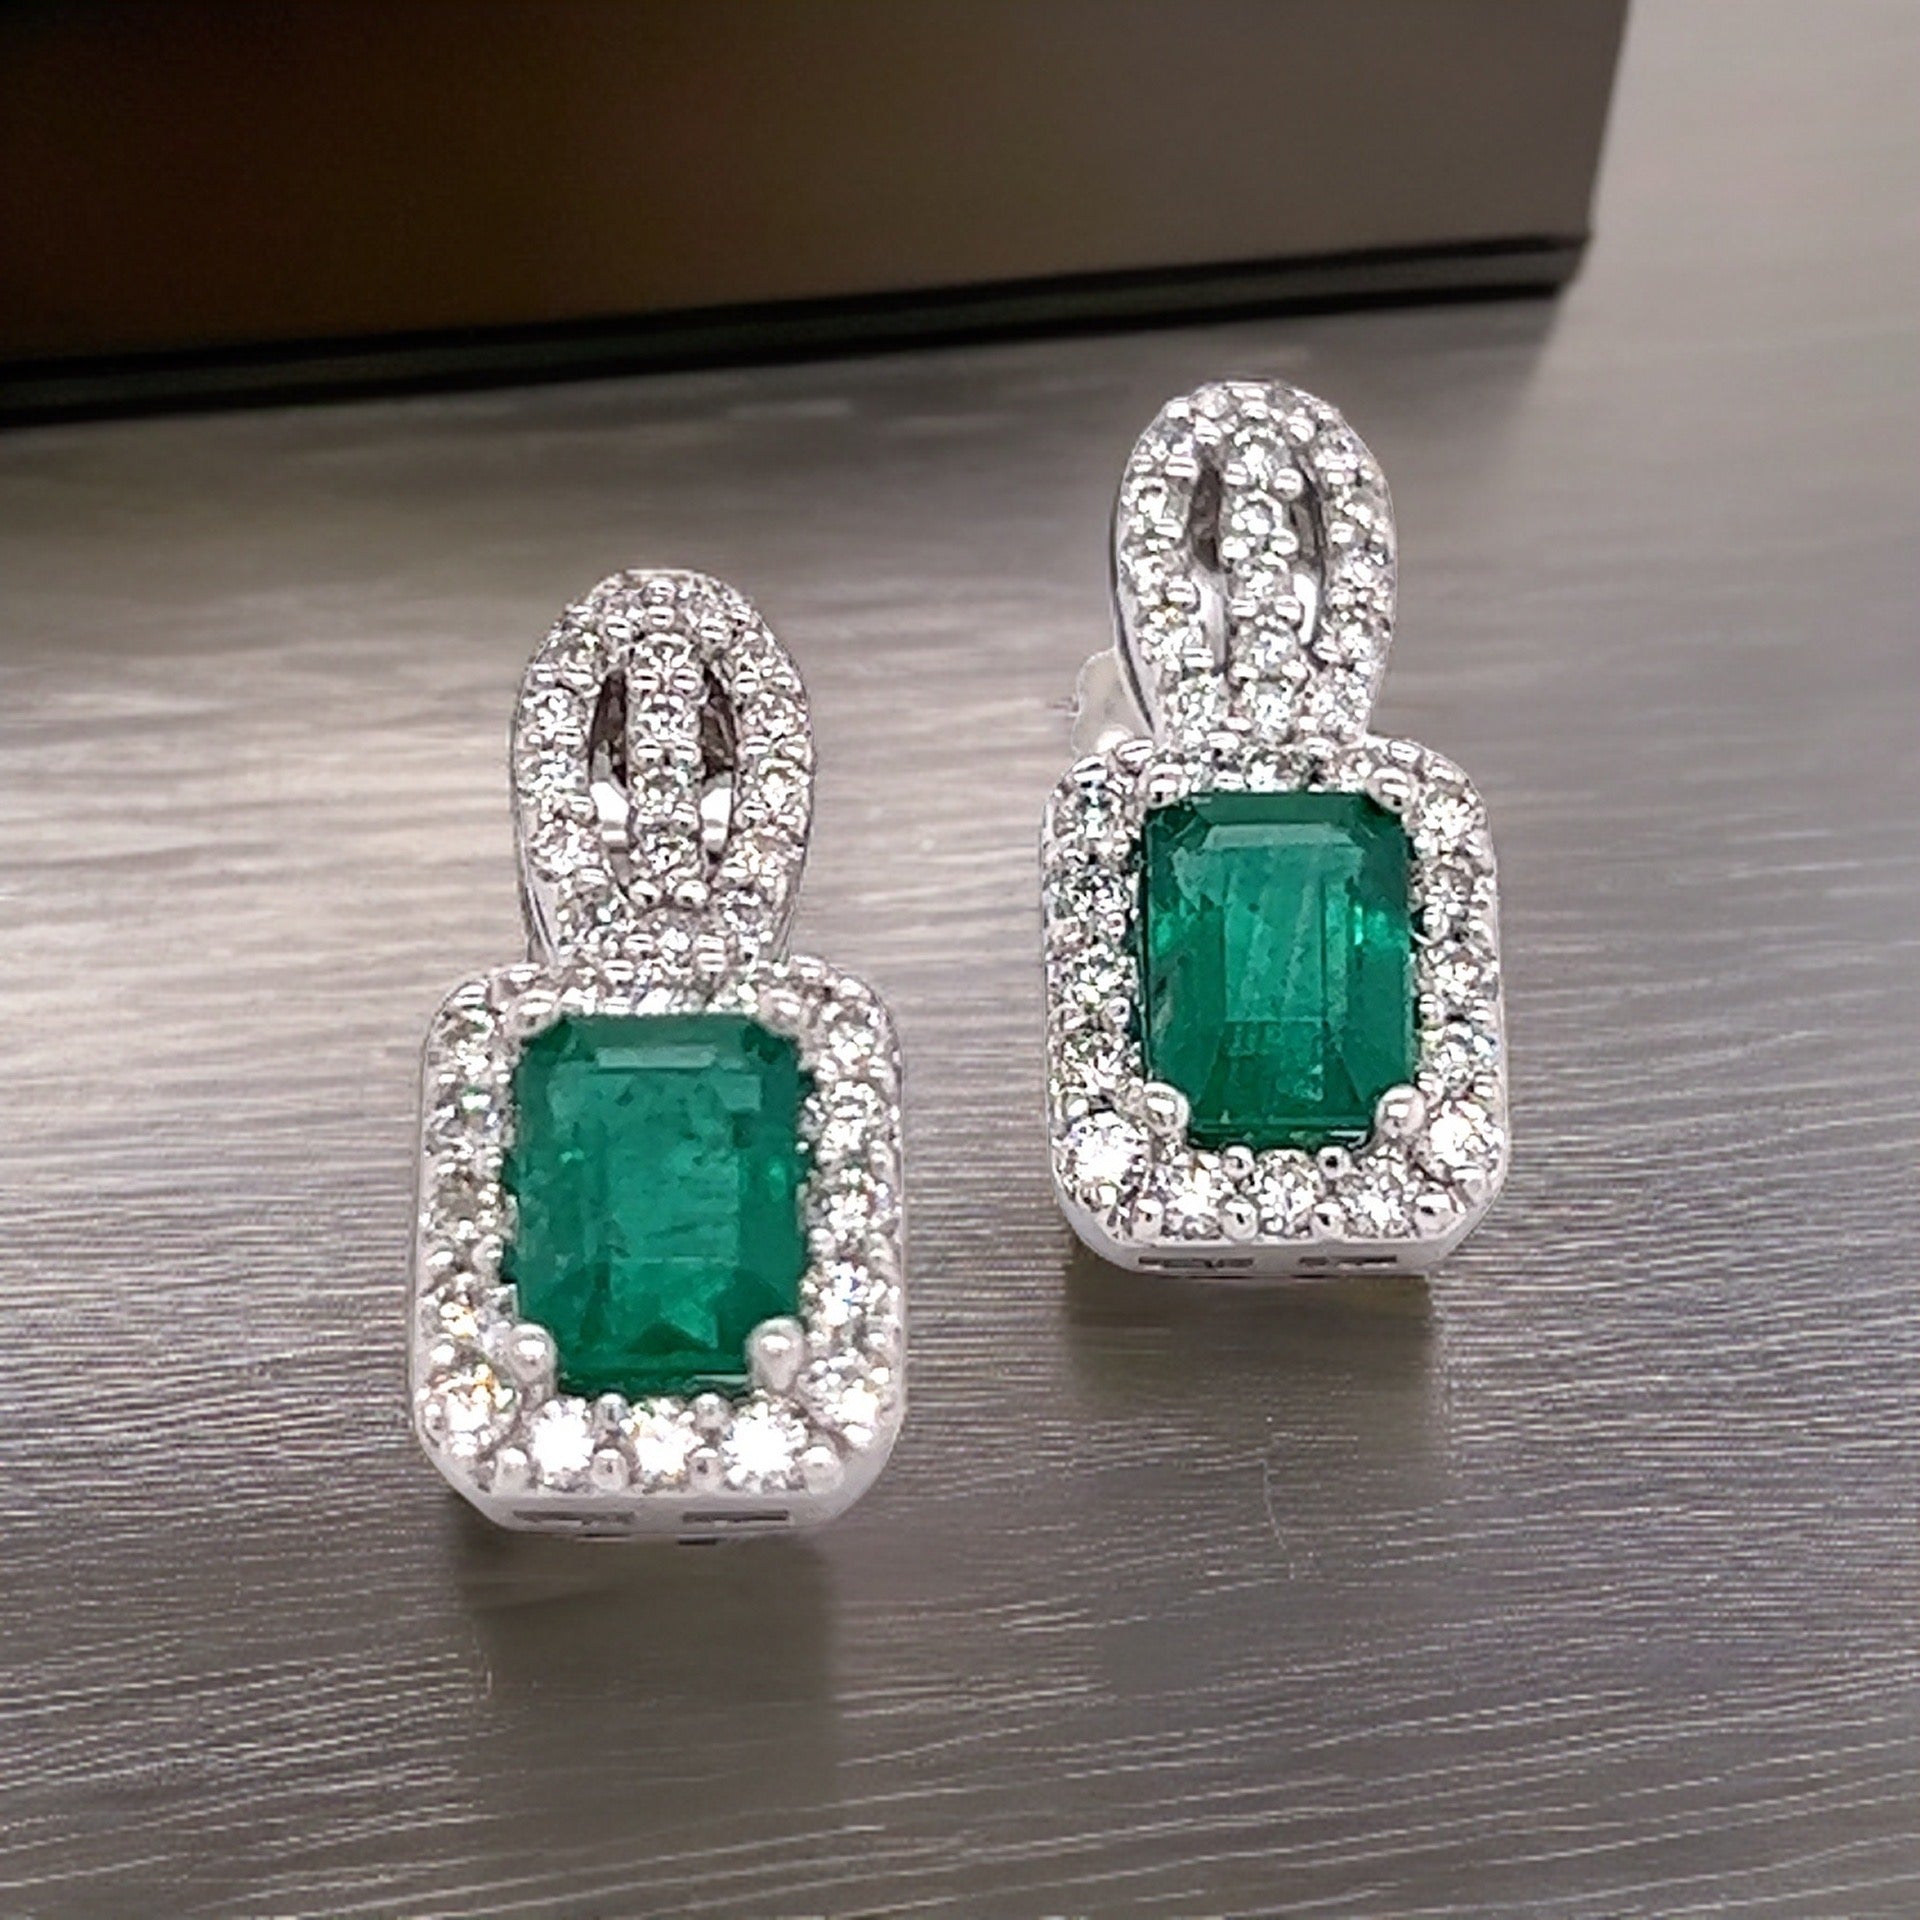 Natural Emerald Diamond Stud Earrings 14k Gold 2.74 TCW Certified $6,950 215406 - Certified Fine Jewelry